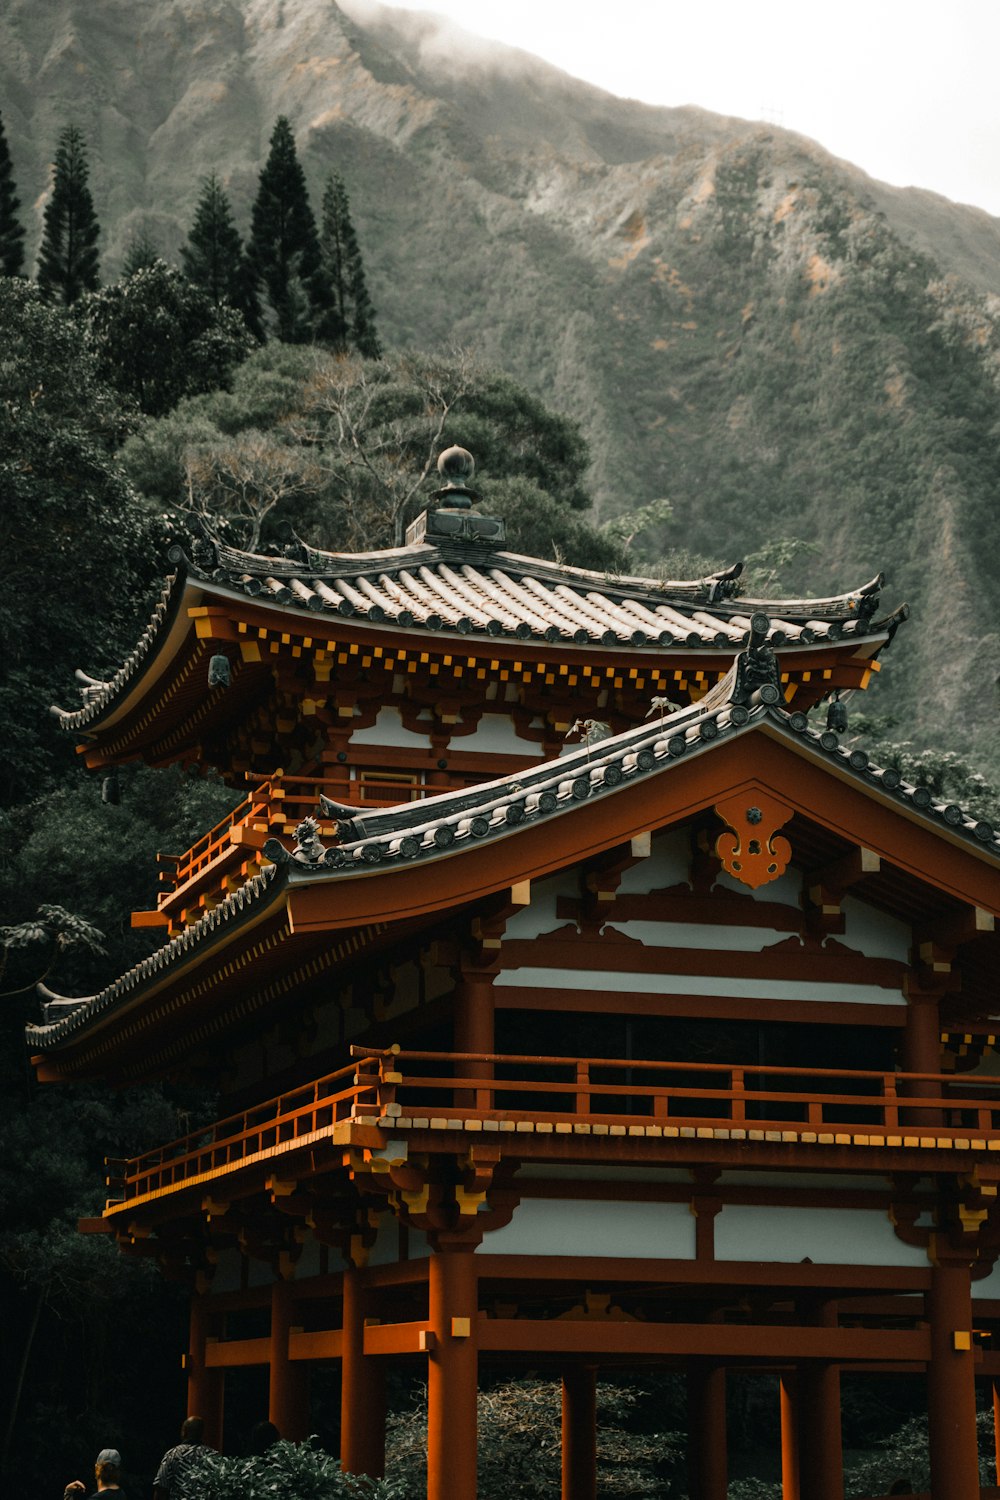 Tempio della pagoda marrone e bianco